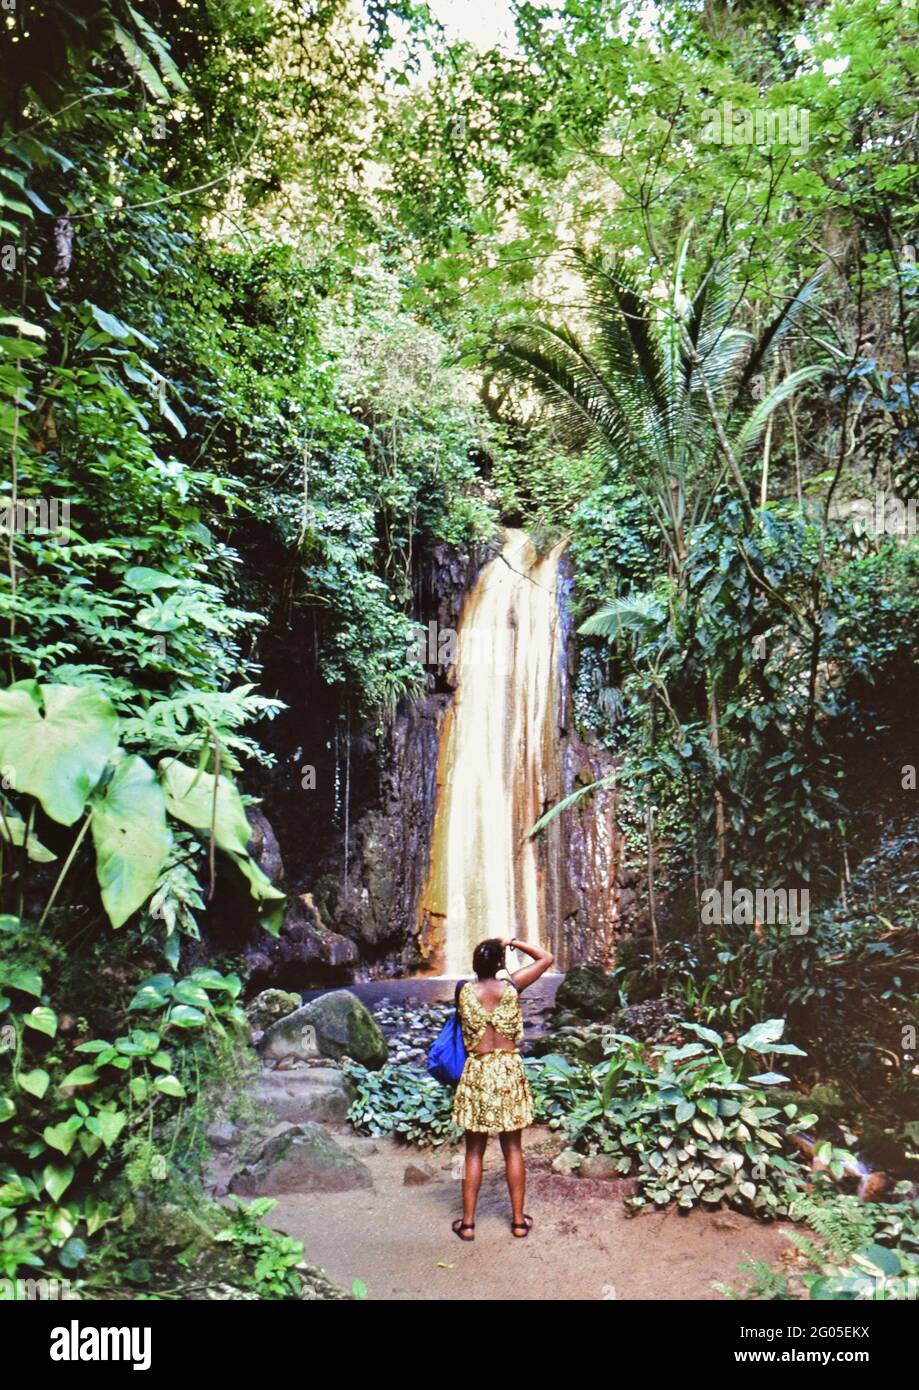 Anni '90 Santa Lucia (Caraibi orientali) - le Cascate del Diamante nei giardini botanici, oro colorato dai minerali nell'acqua ca. 1995-1999 Foto Stock